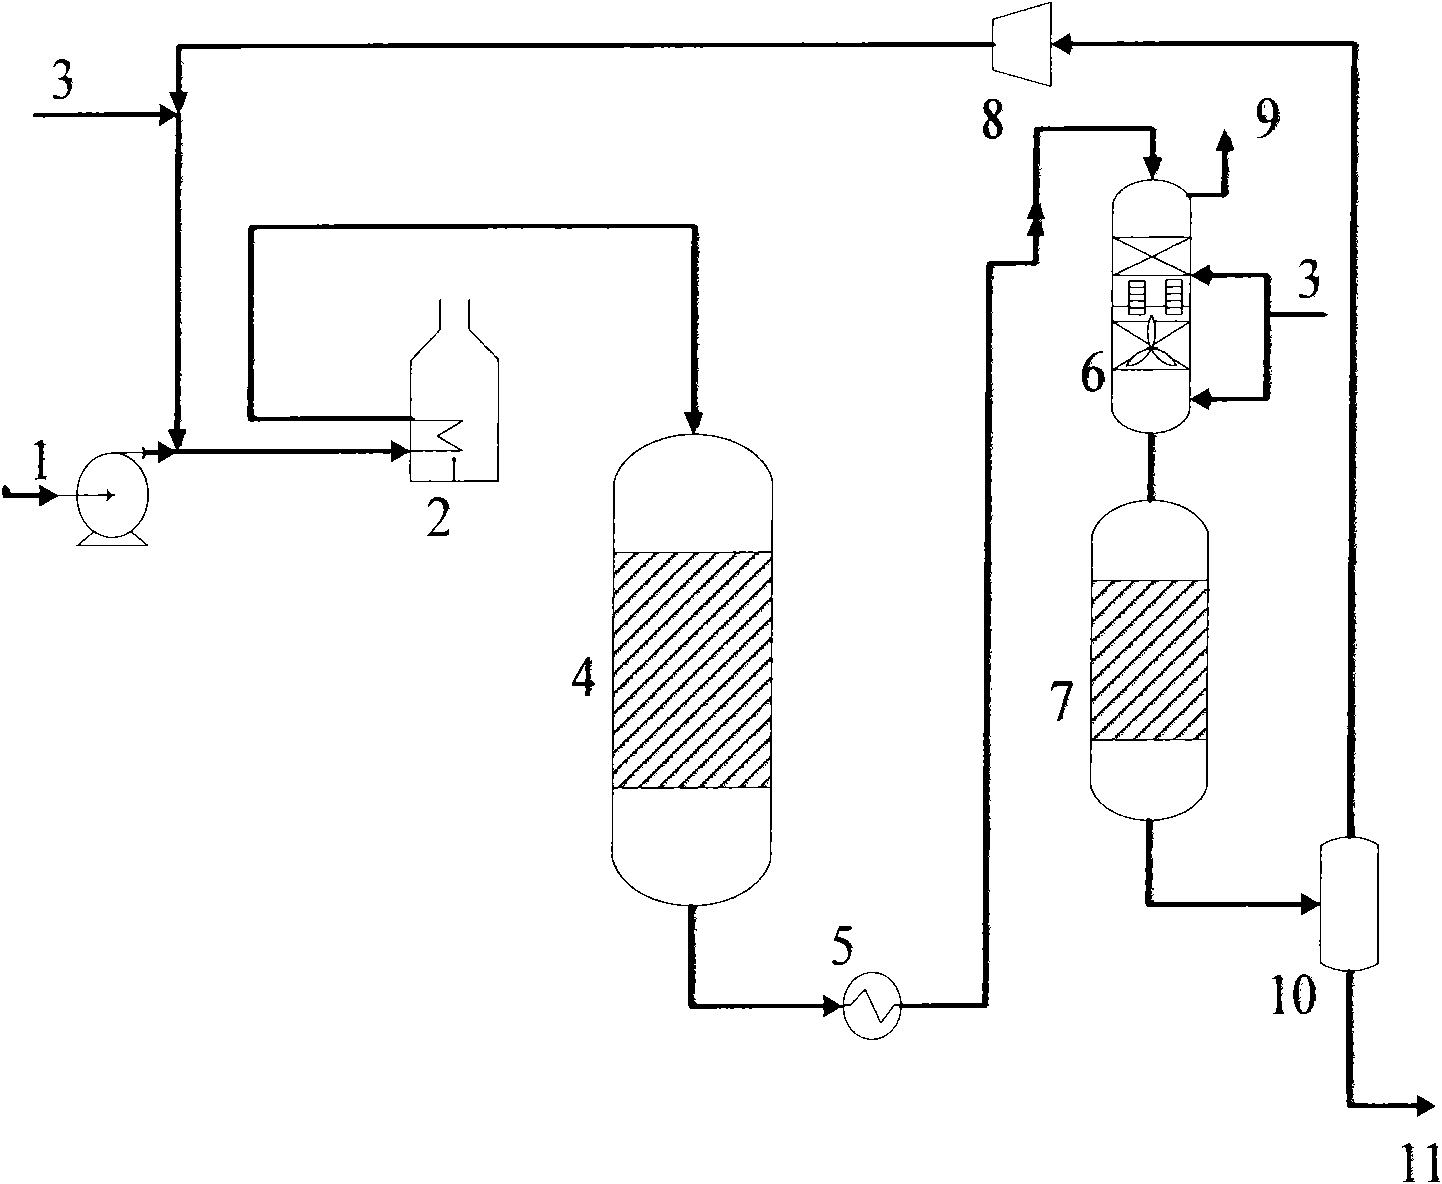 Inferior diesel oil deep hydrodesulfurization method